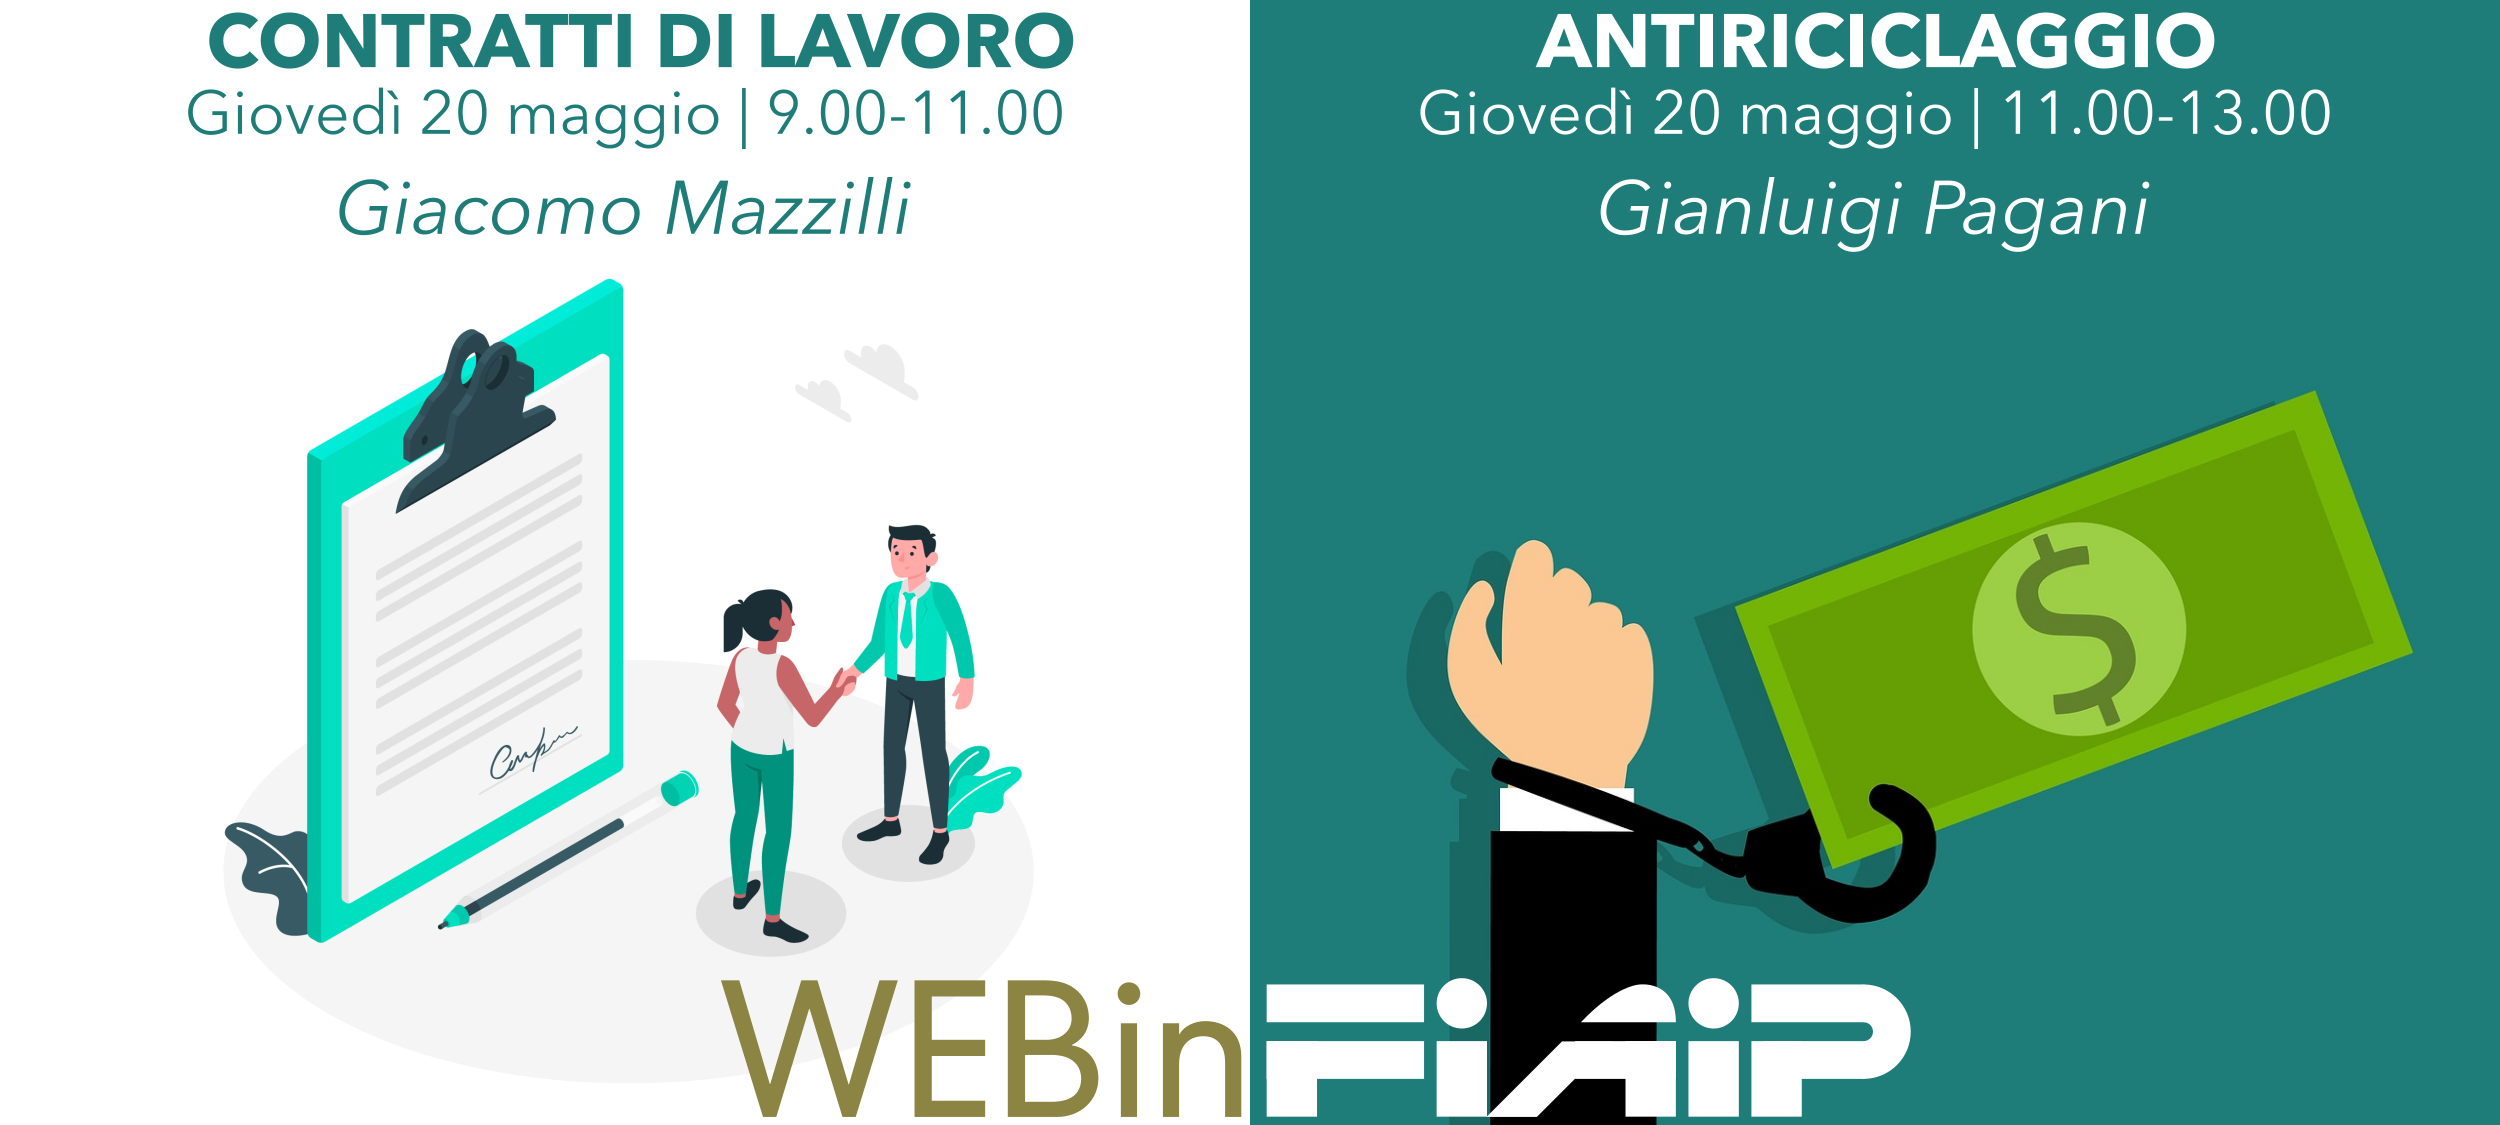 WEBinFIAIP Emilia Romagna – 20/05/2021 | Contratti di lavoro – Antiriciclaggio